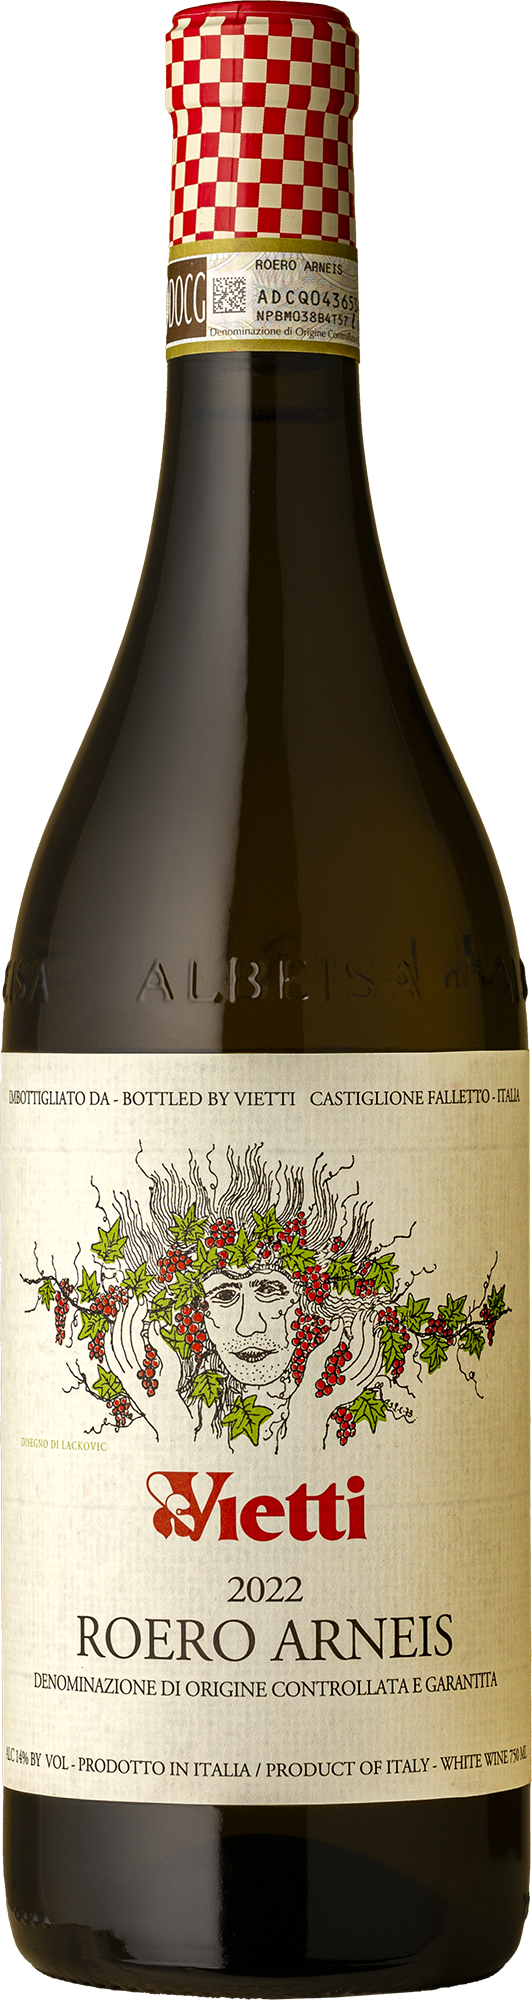 Vietti - Roero Arneis 2022 White Wine